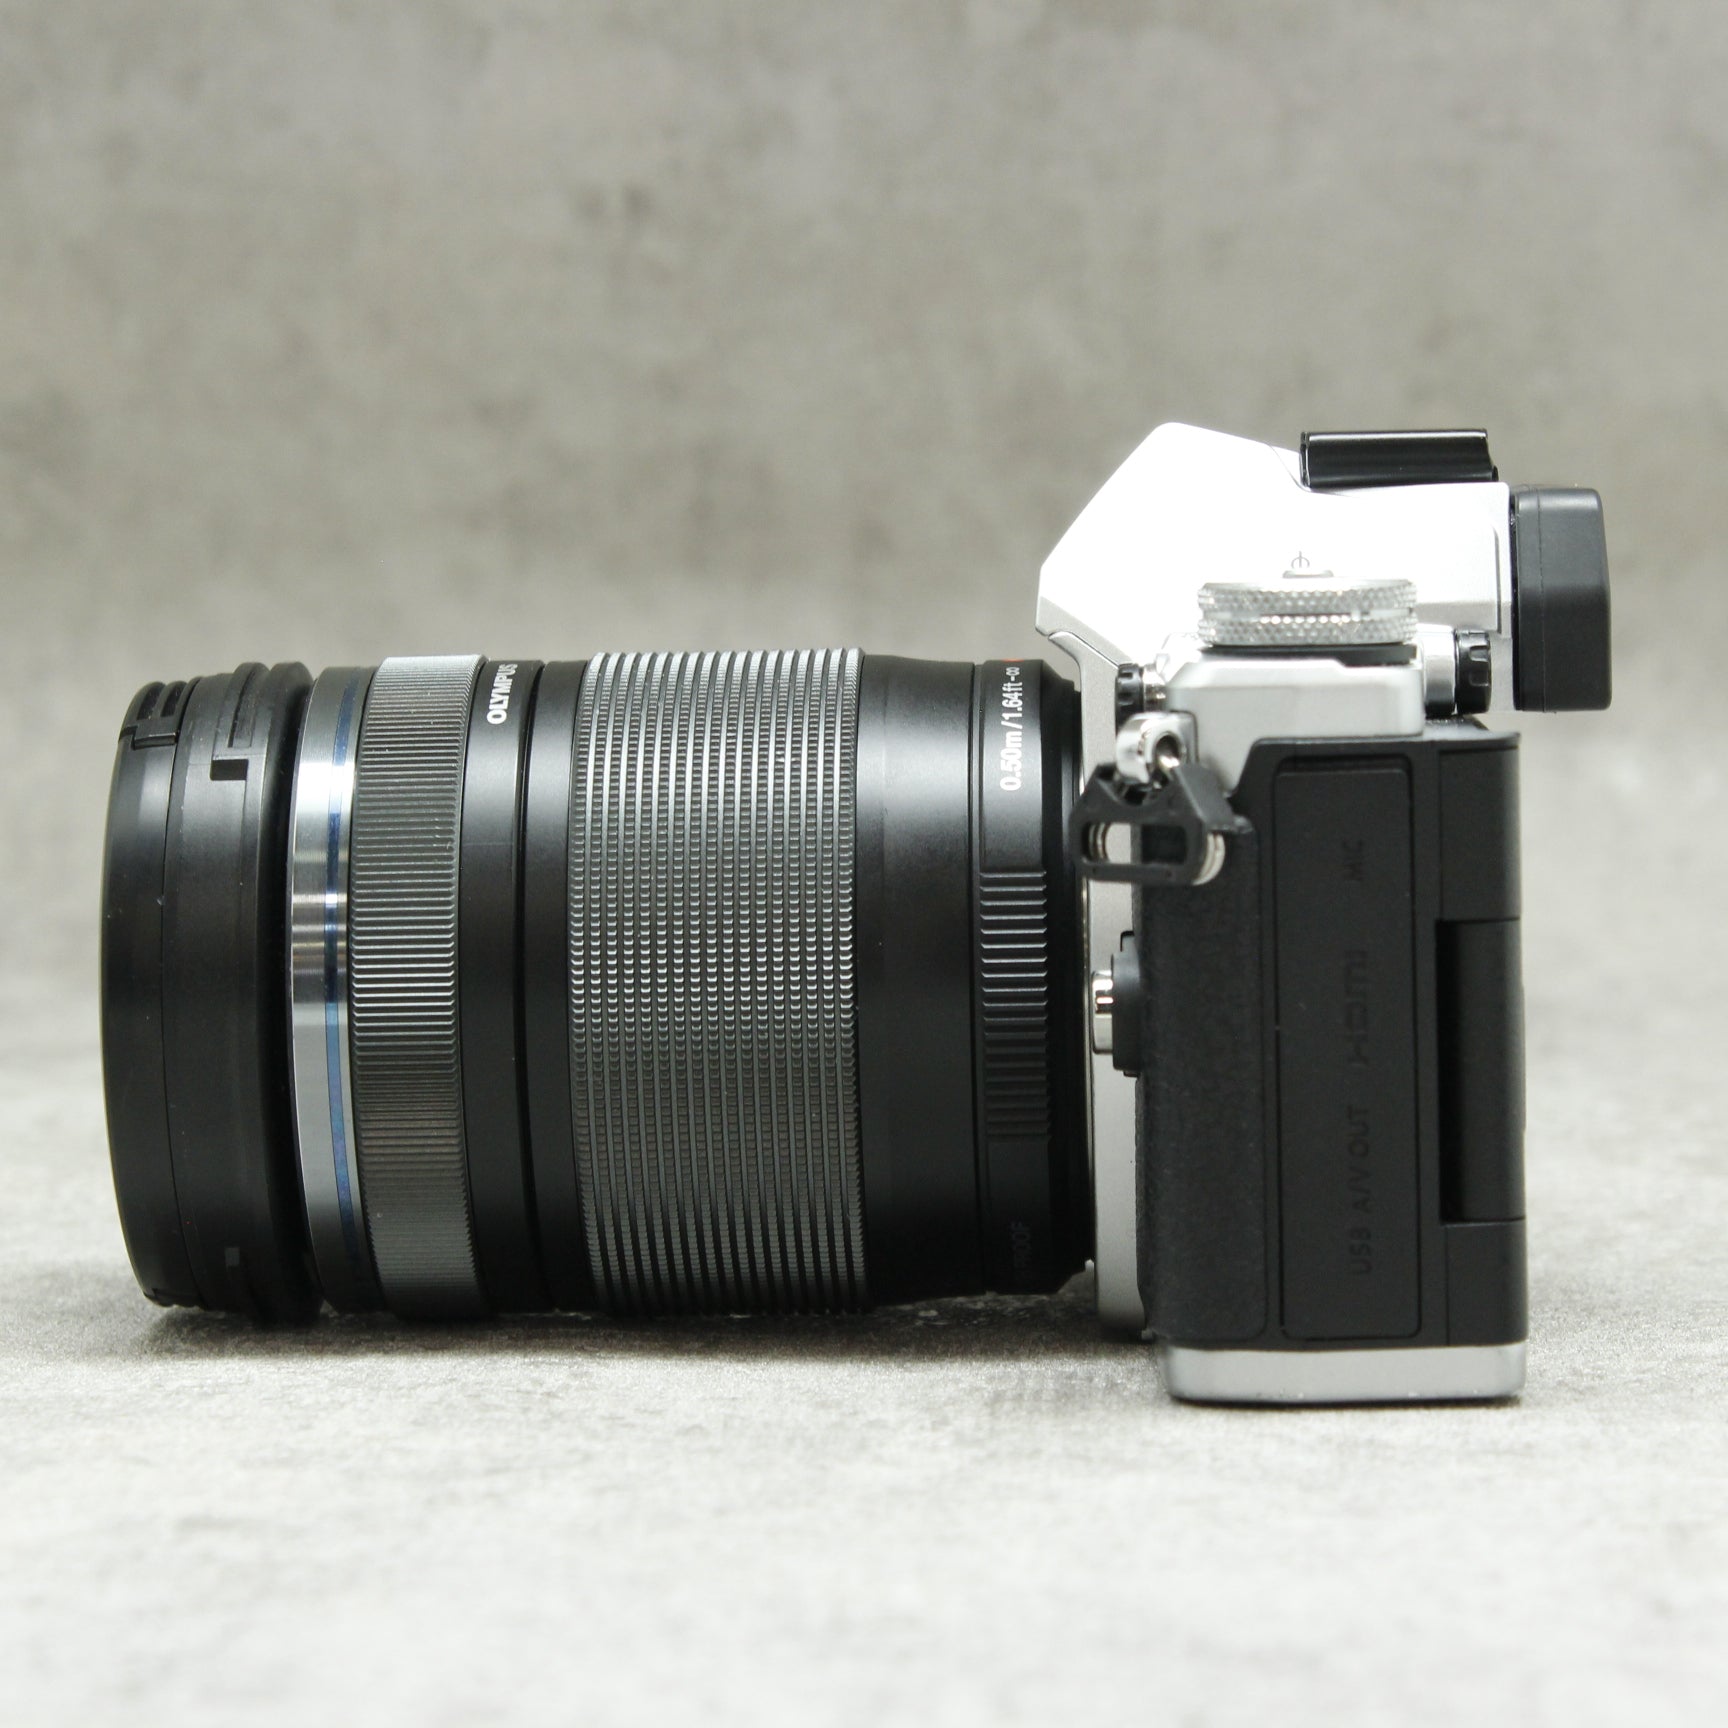 OLYMPUS ミラーレス一眼カメラ OM-D E-M5 MarkII 14-150mm IIレンズ 